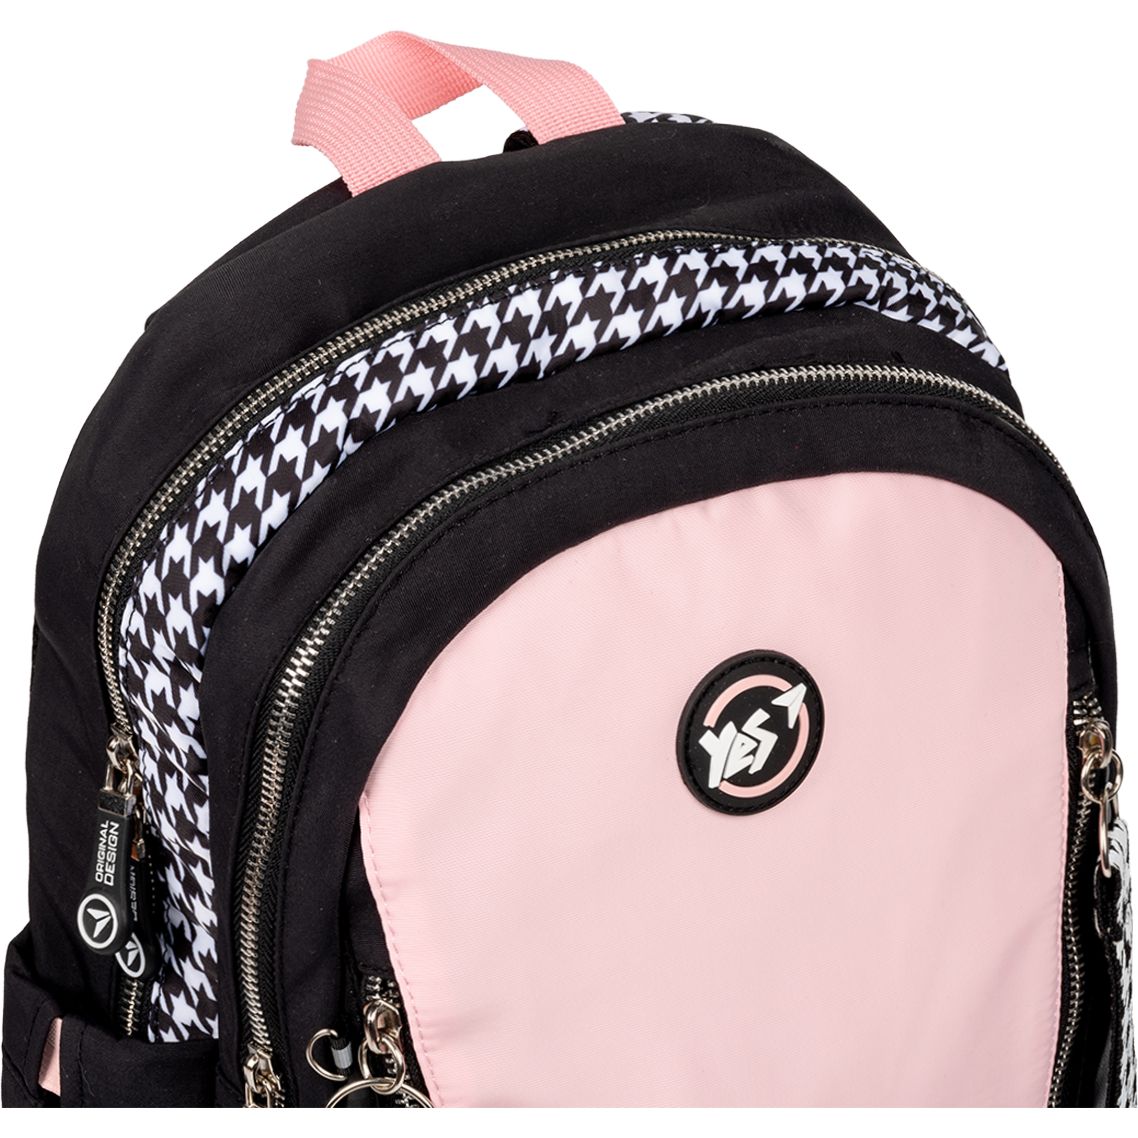 Рюкзак Yes TS-40 Stay Awesome, черный с розовым (558918) - фото 6